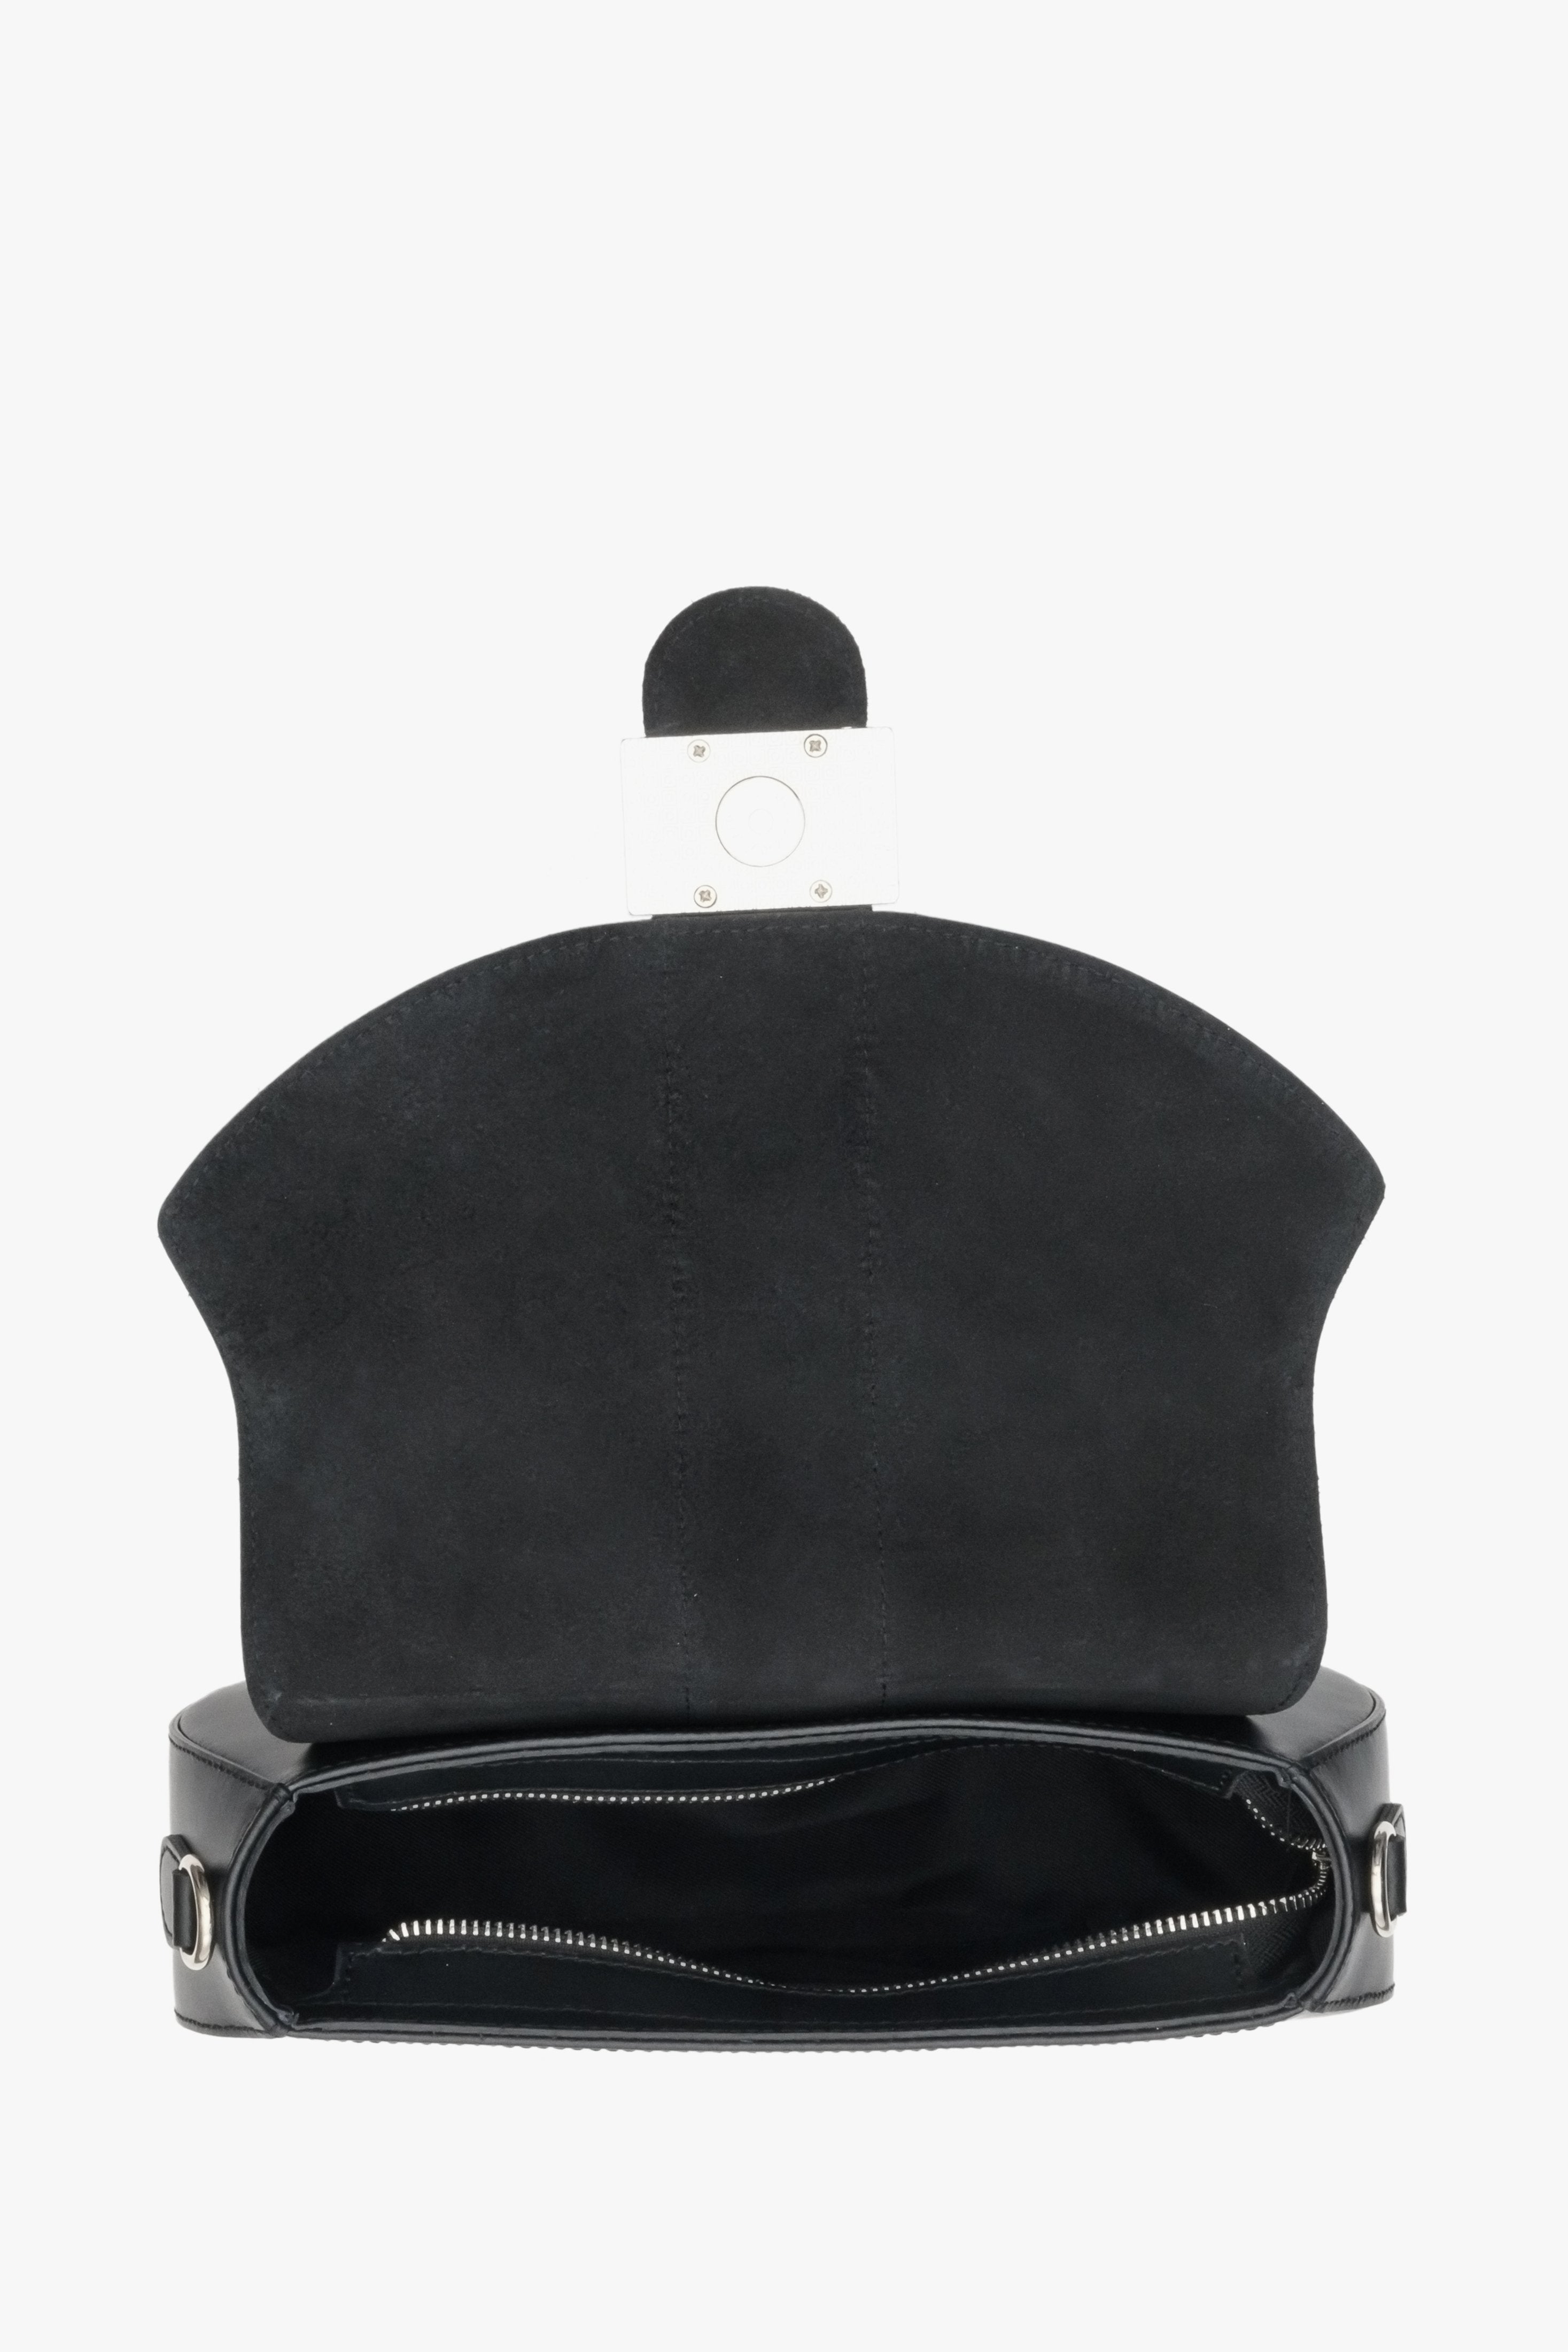 Skórzana torebka damska w średnim rozmiarze koloru czarnego marki Estro - wnętrze modelu.